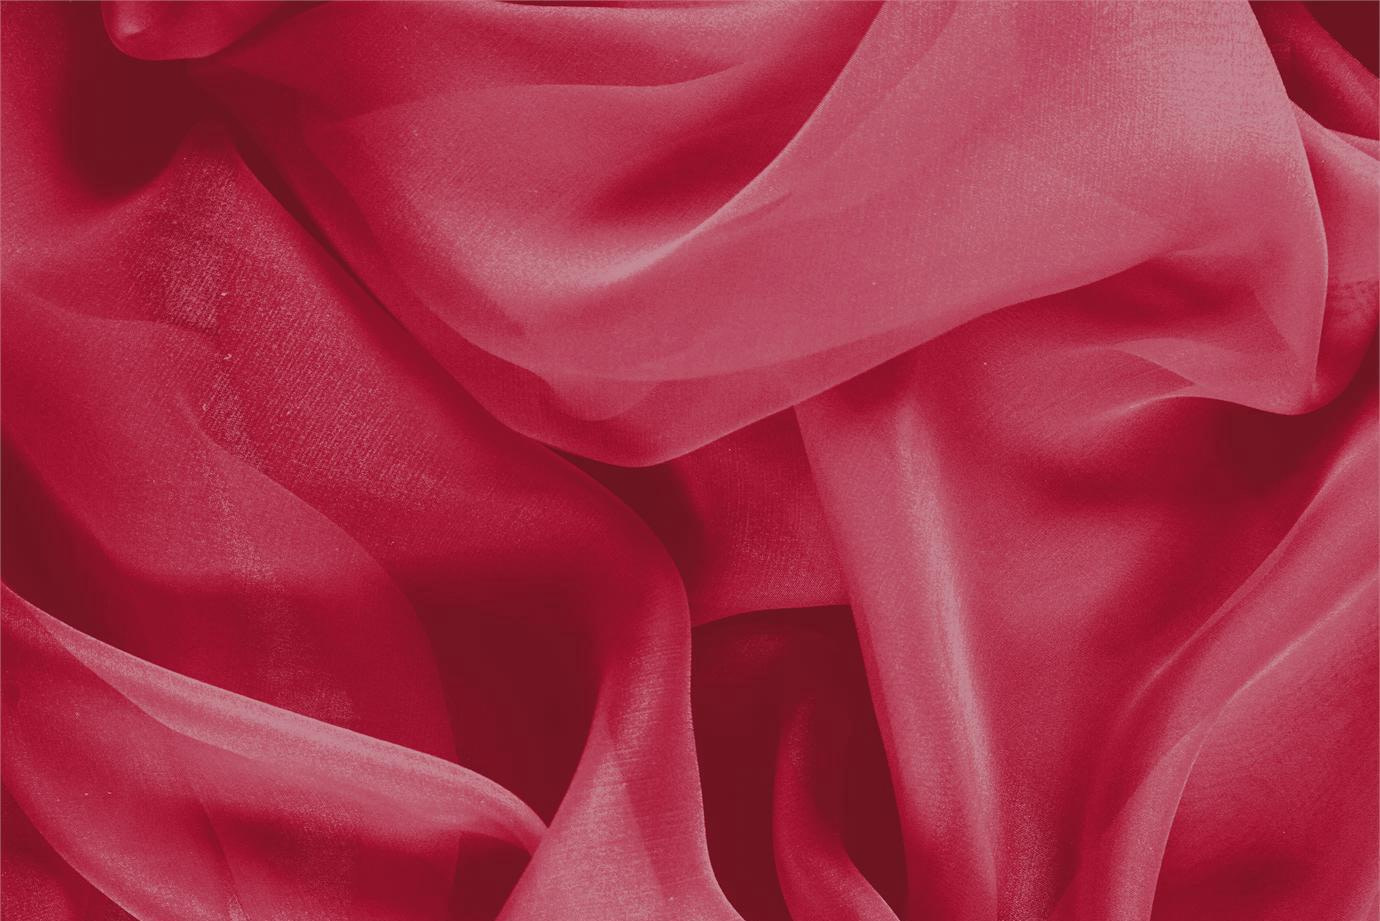 Tessuto Chiffon Rosso Rubino in Seta per Abbigliamento UN000513